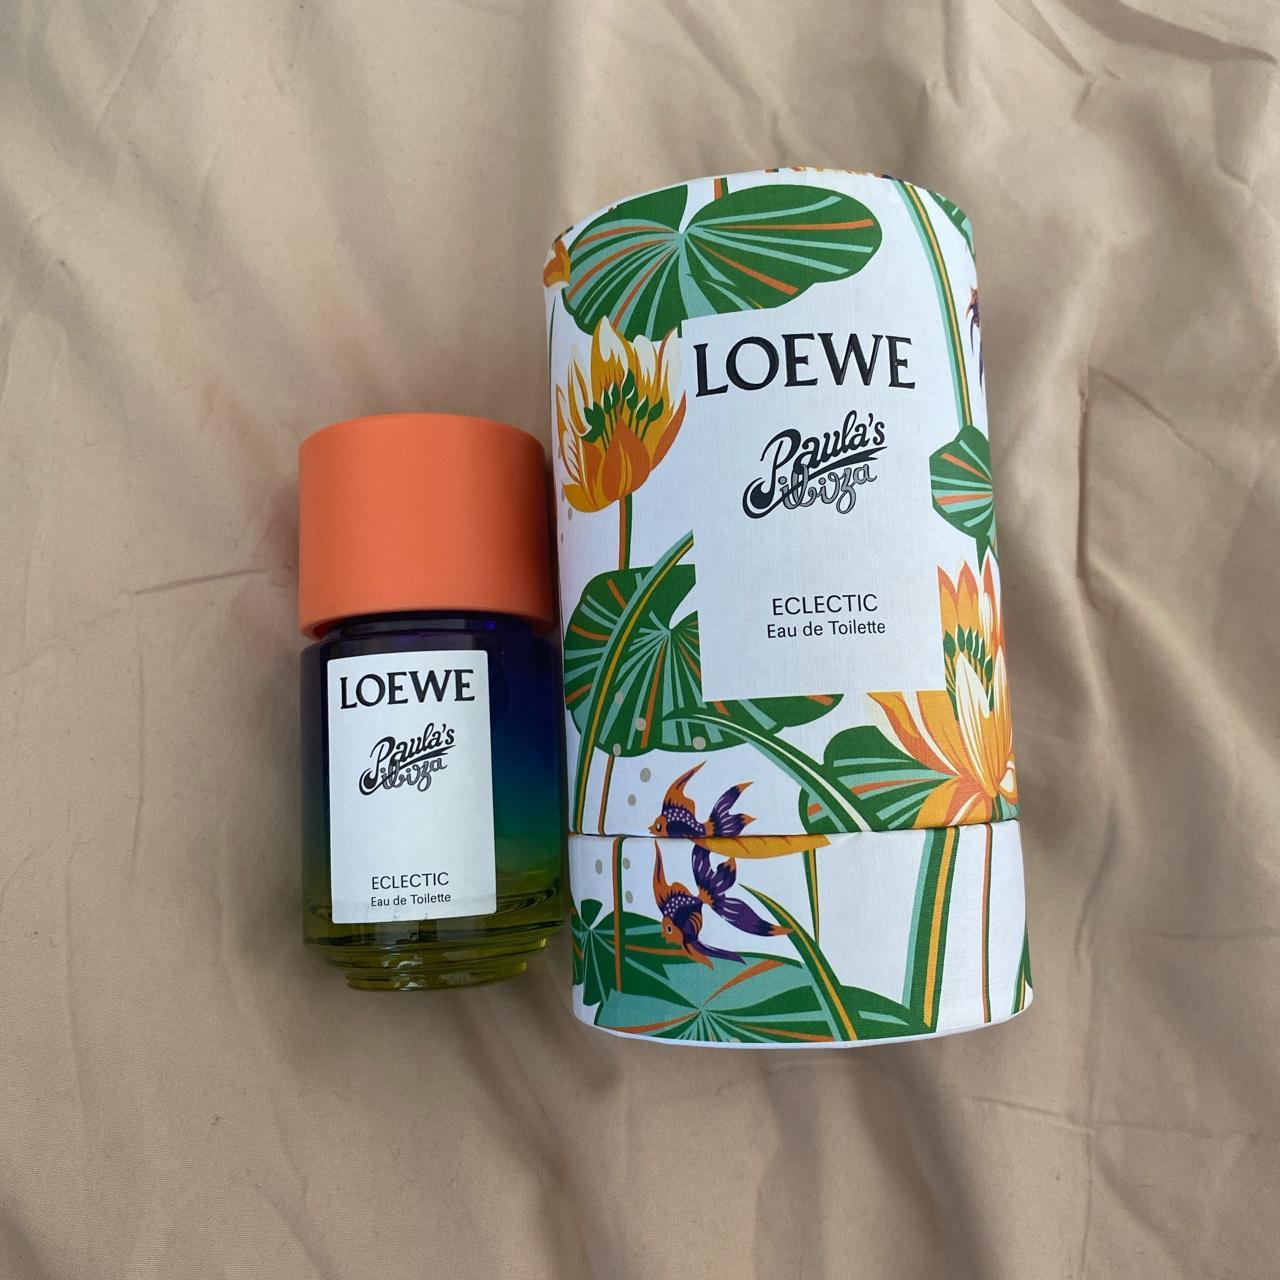 Product Image 1 - Loewe Paula’s Abiza Eclectic scent